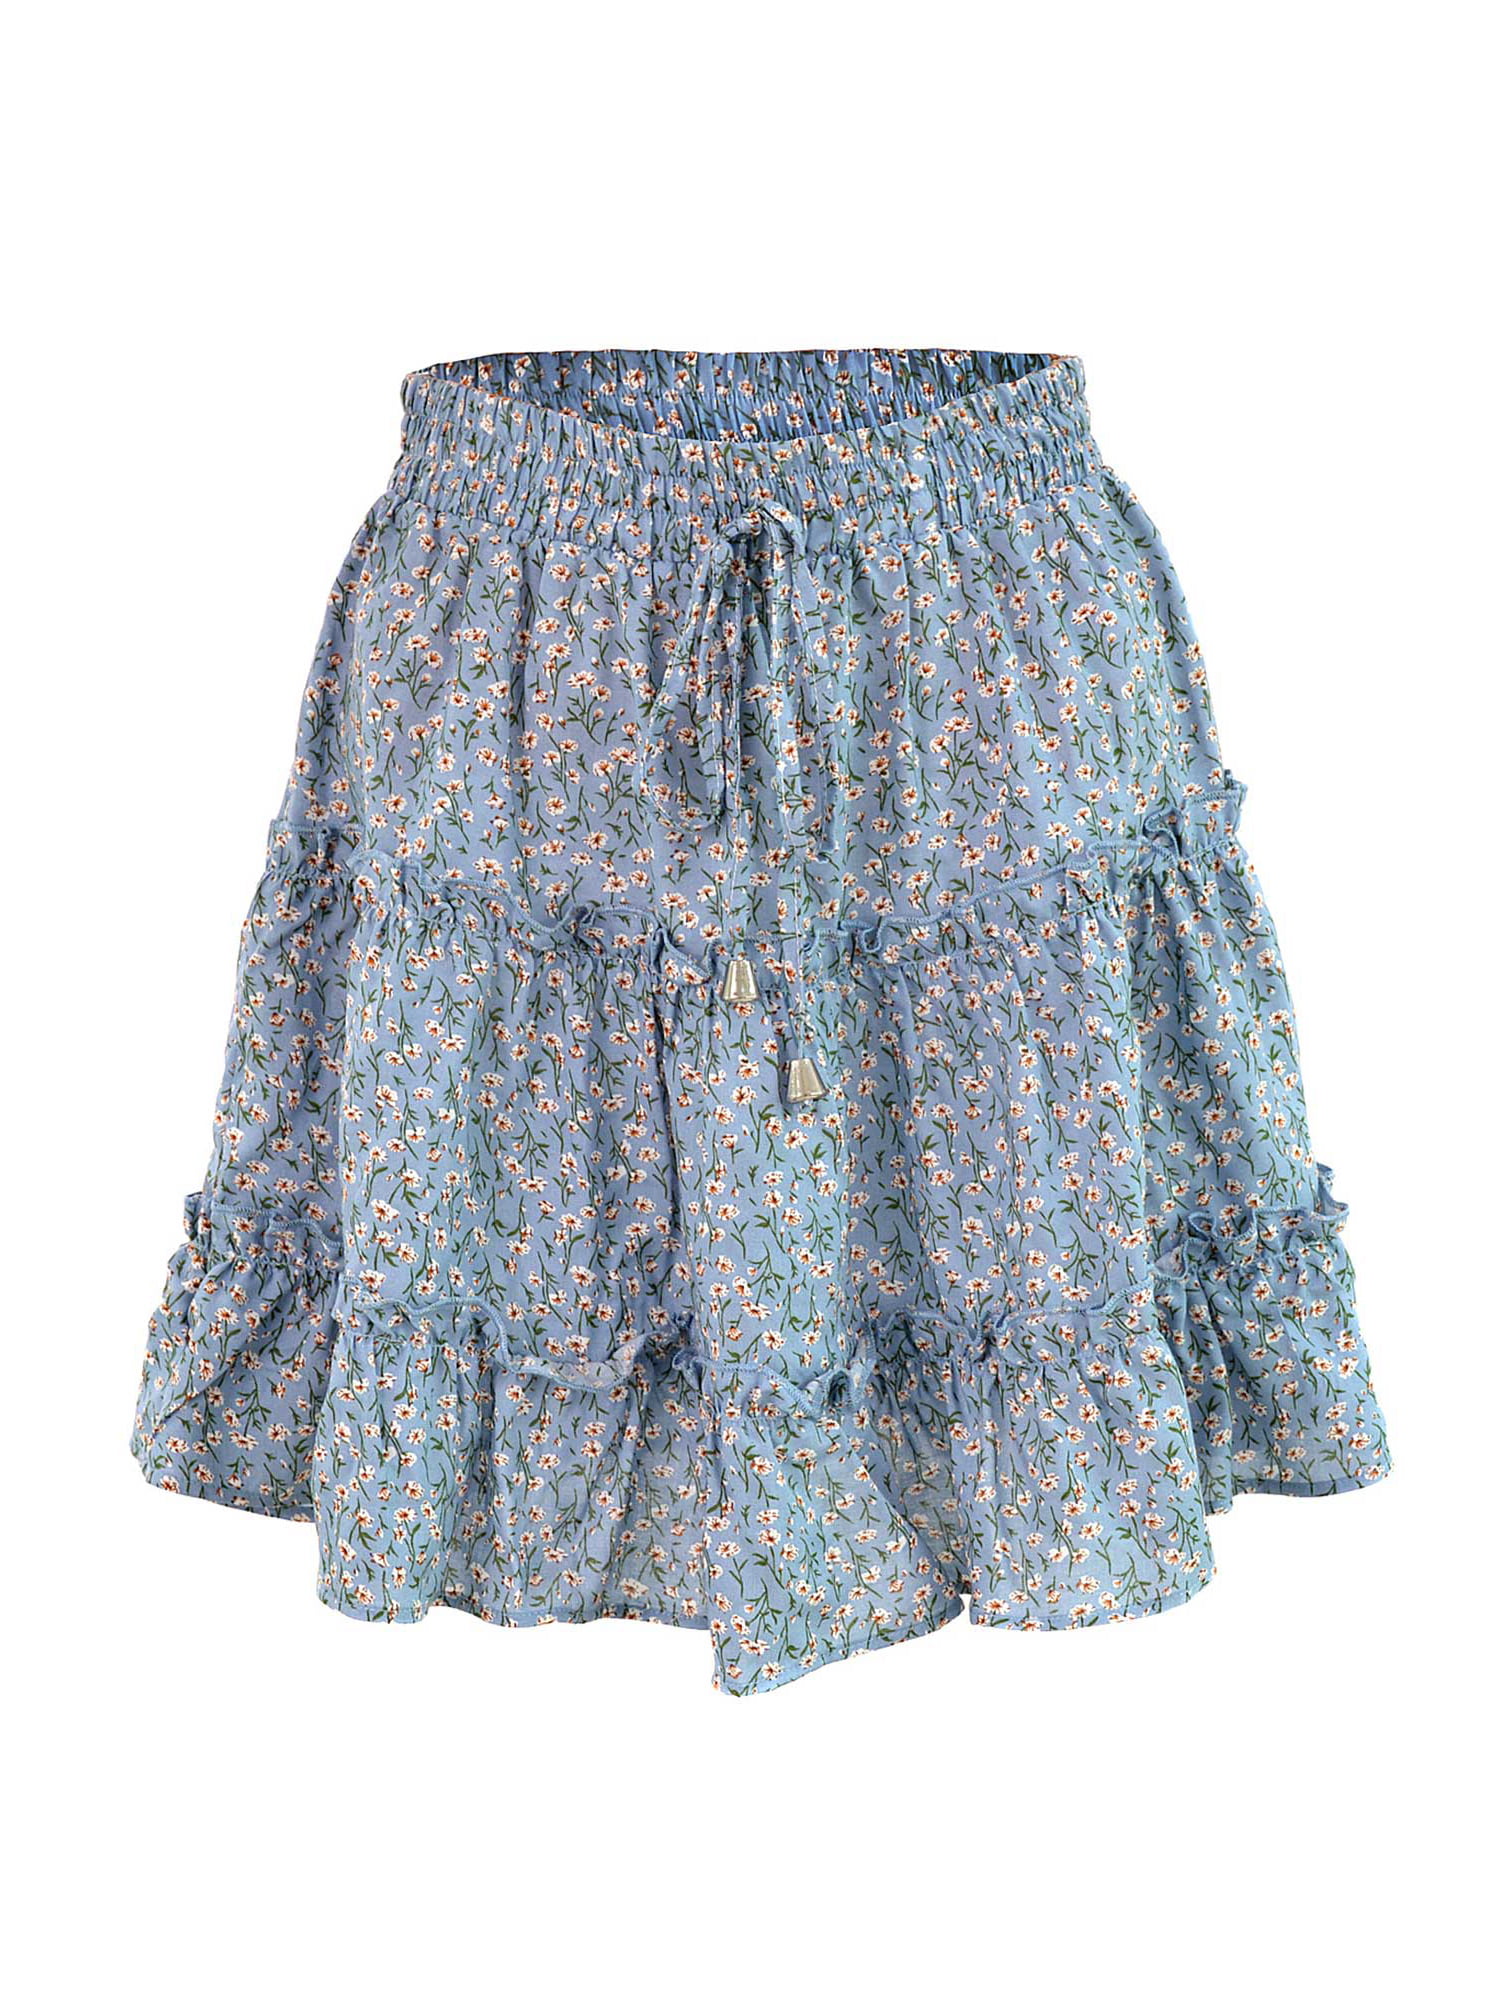 ZNU Women High Waist Ruffled Floral Skirt Summer Mini Dress Bottoms ...